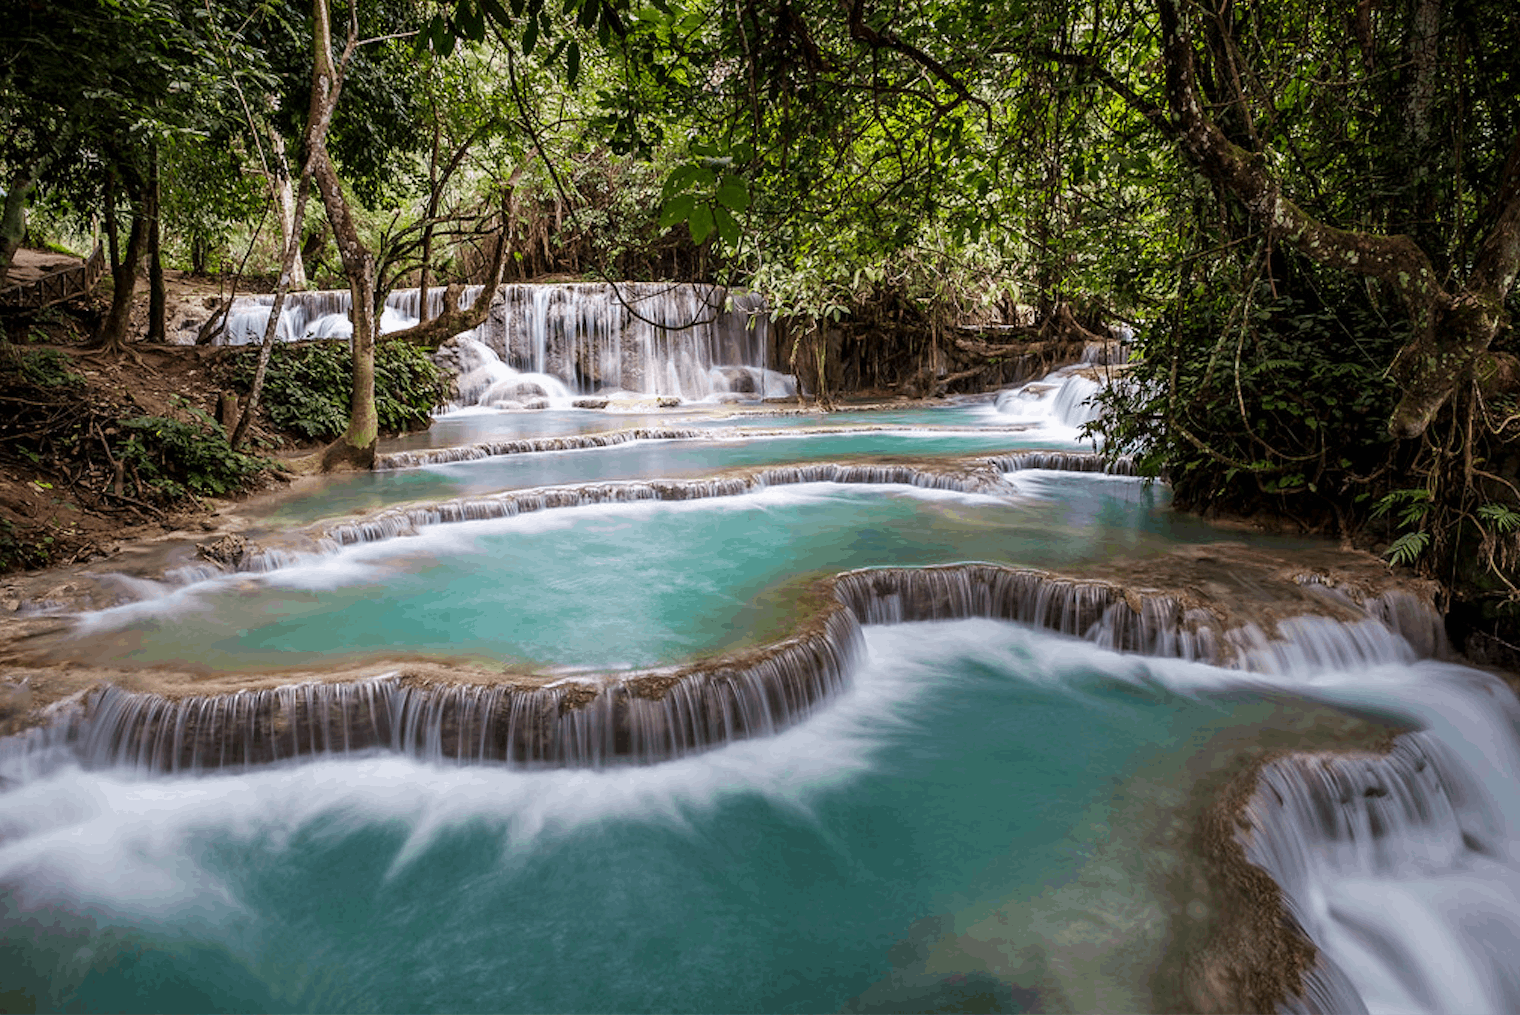 Les eaux turquoise de Kuang Sy